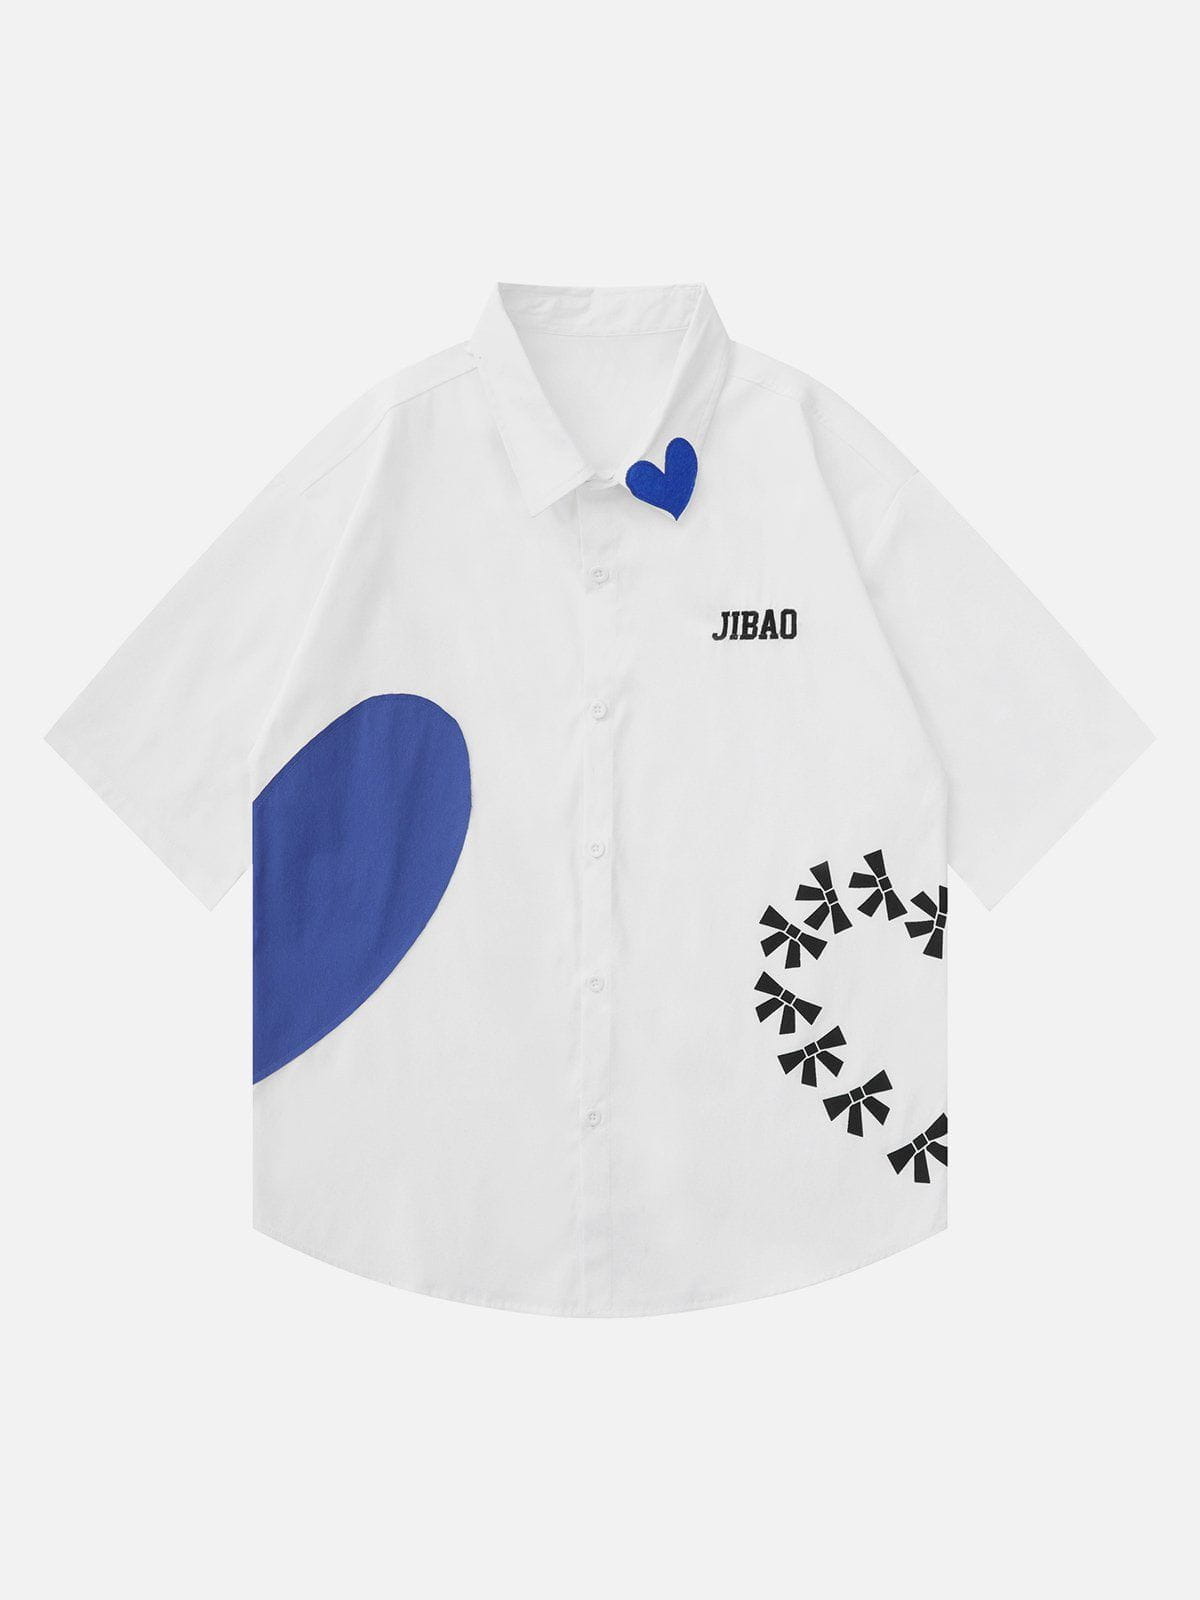 Aelfric Eden Split Blue Heart Embroidery Short Sleeve Shirts – Aelfric eden